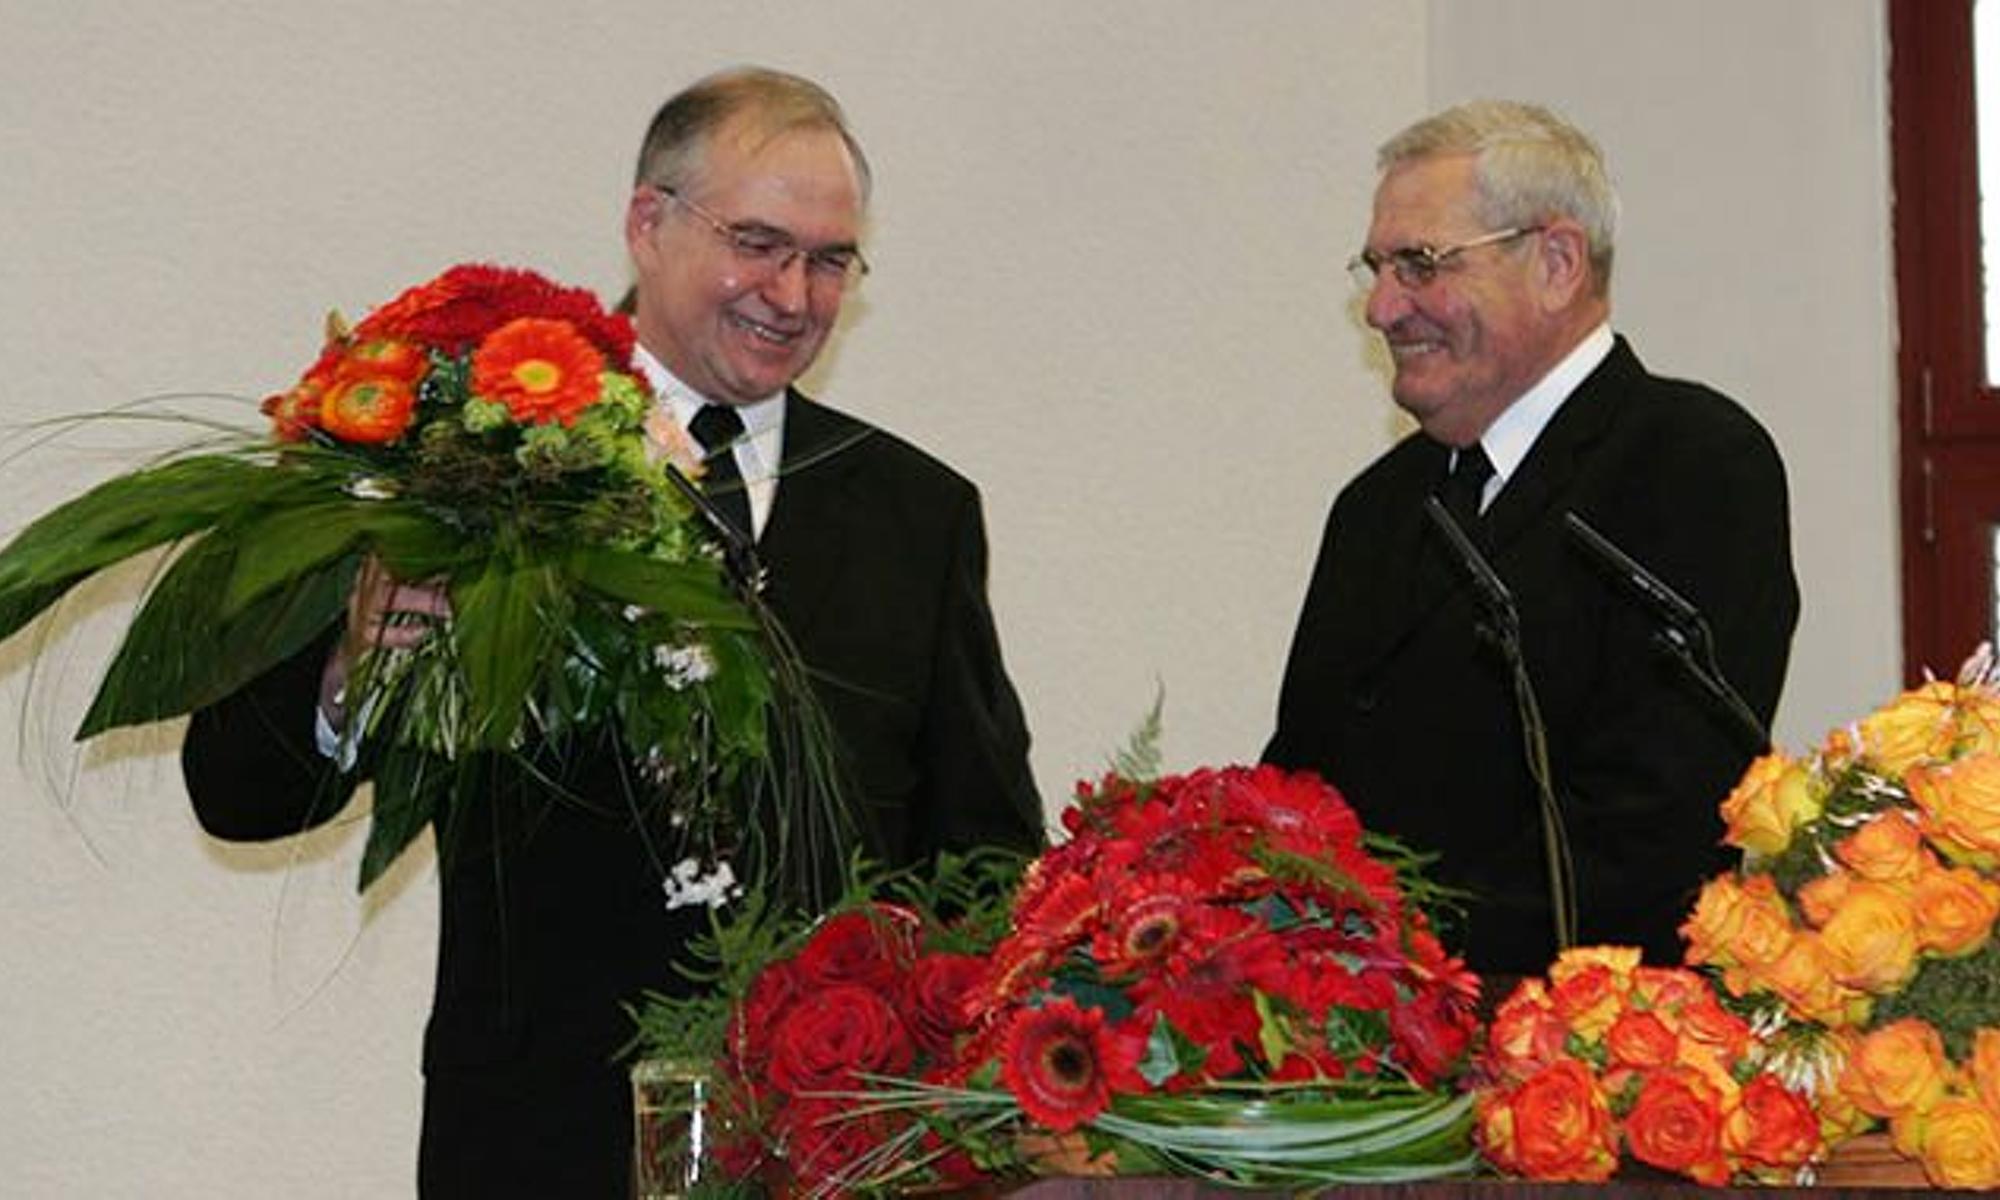 Am 23. April 2006 trat Bezirksapostel Saur (rechts) in den Ruhestand